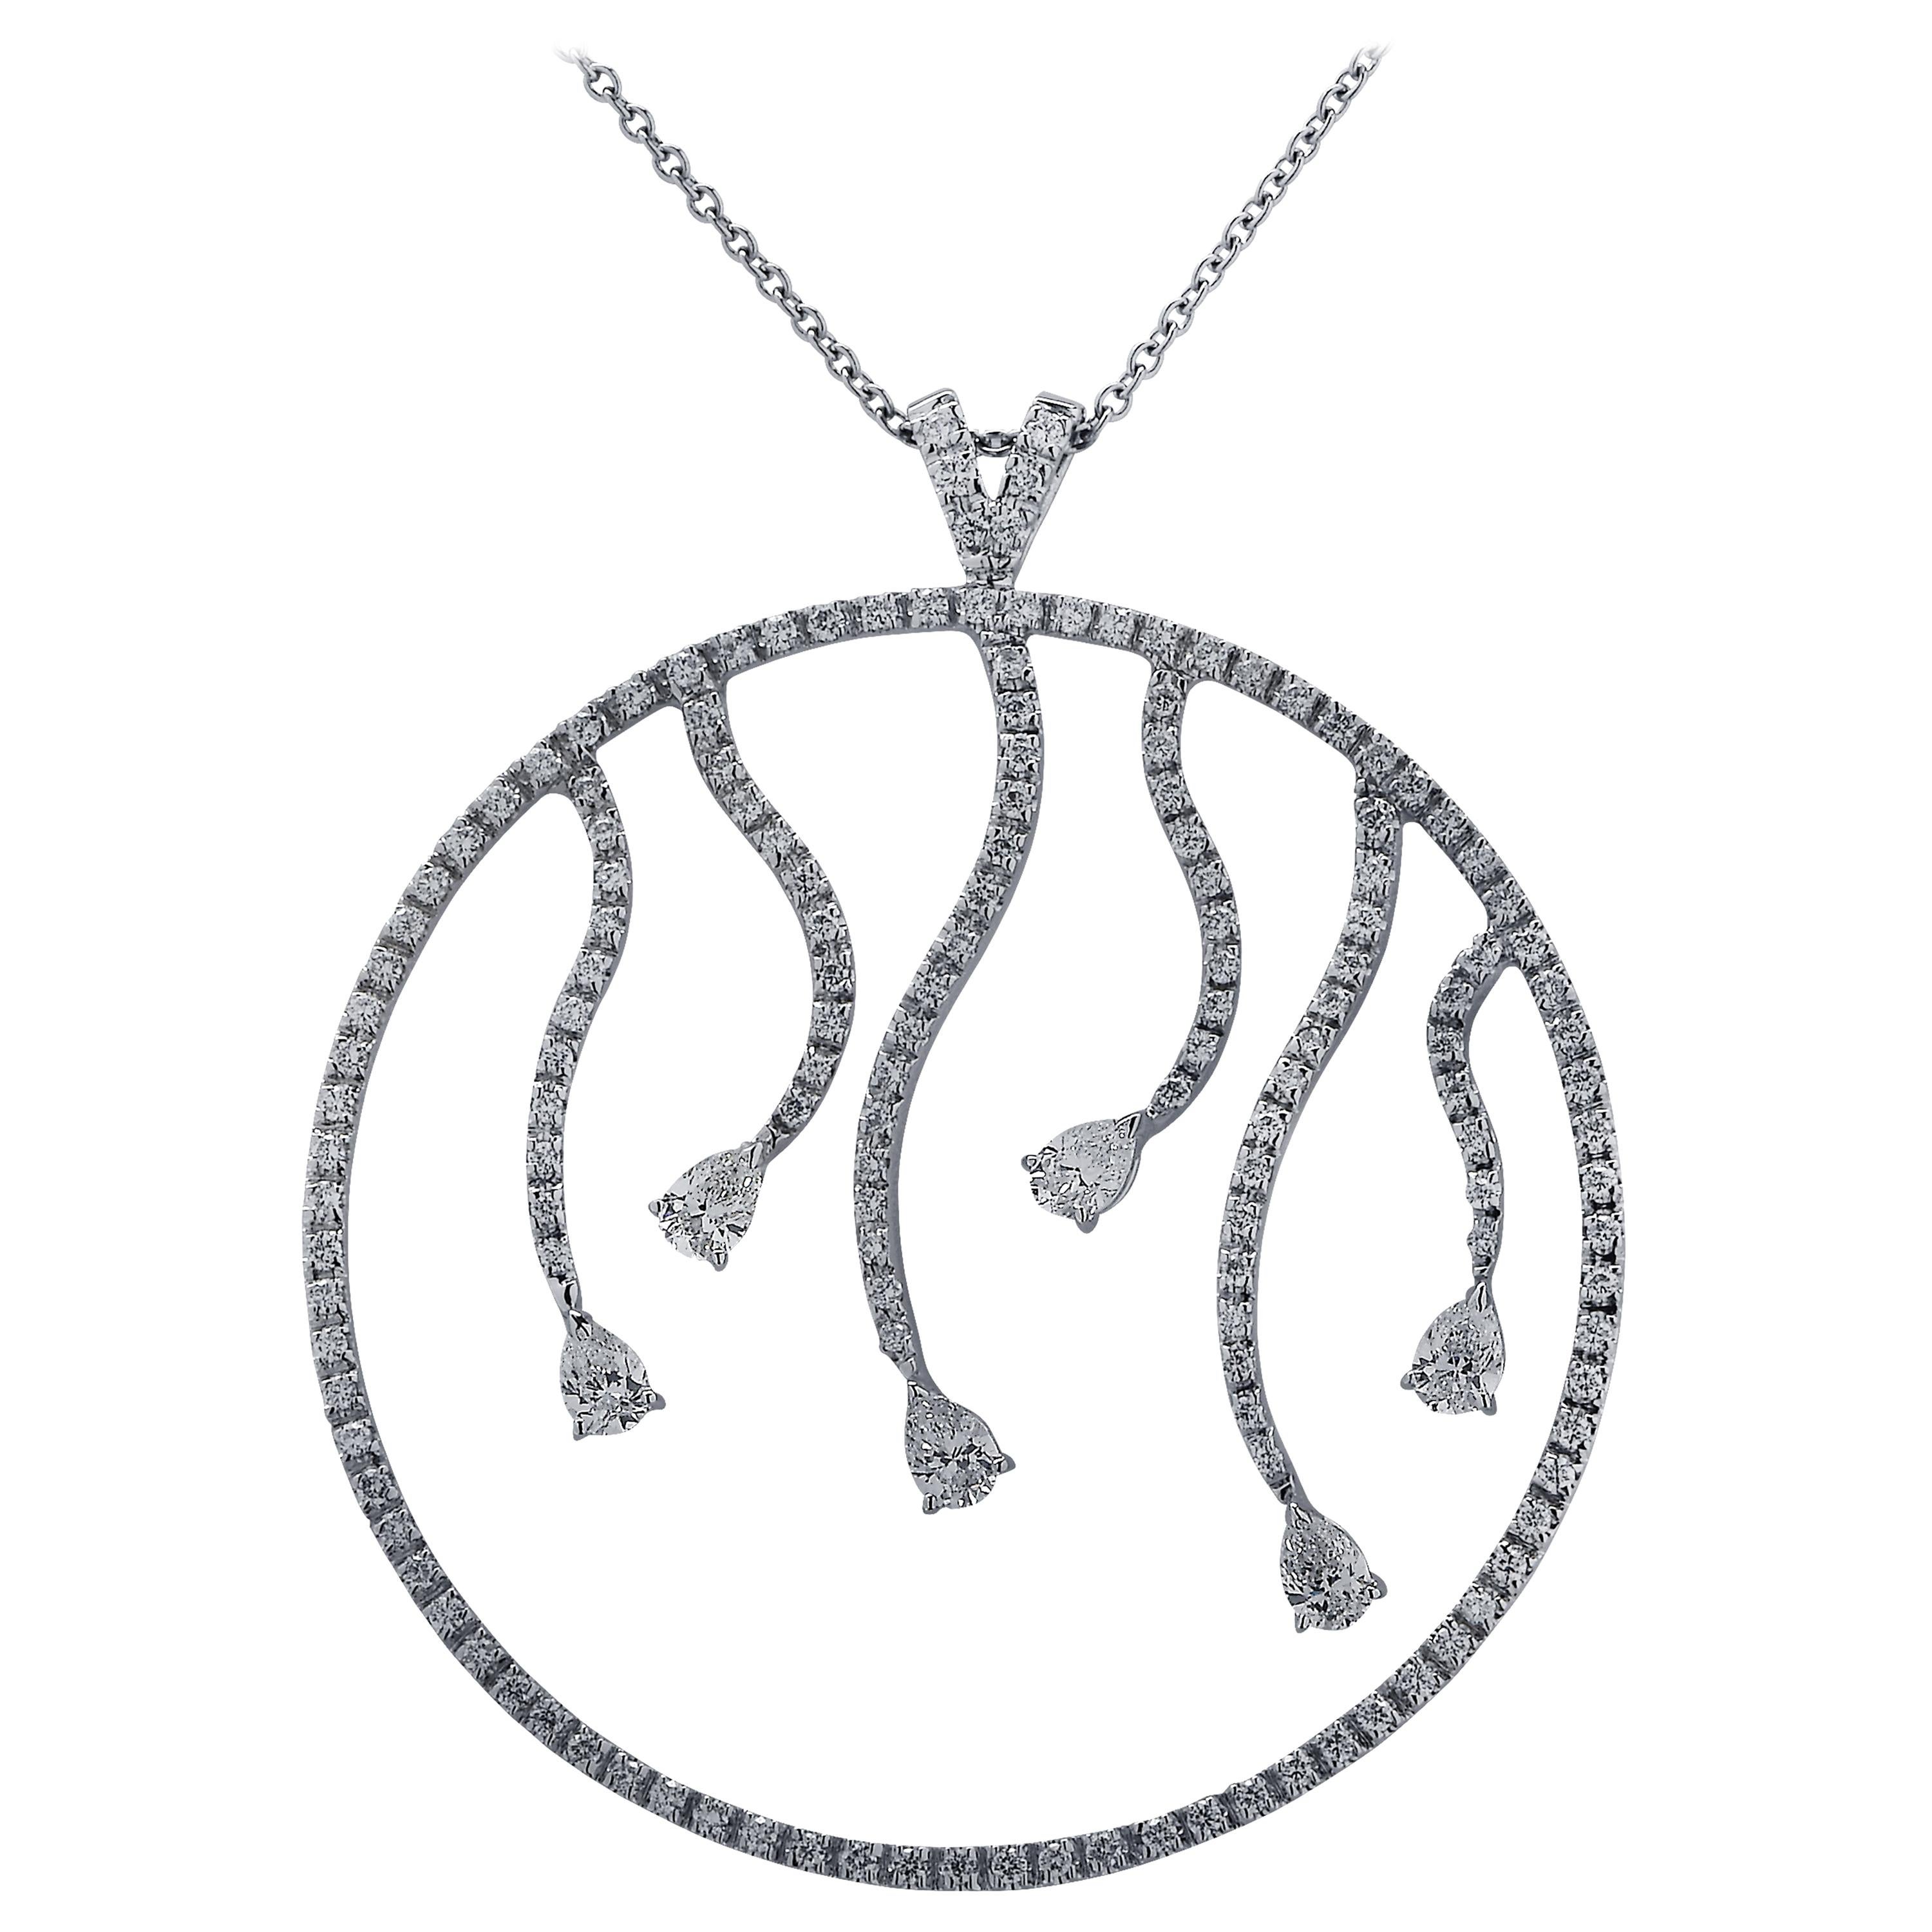 3.04 Carat Diamond Pendant Necklace